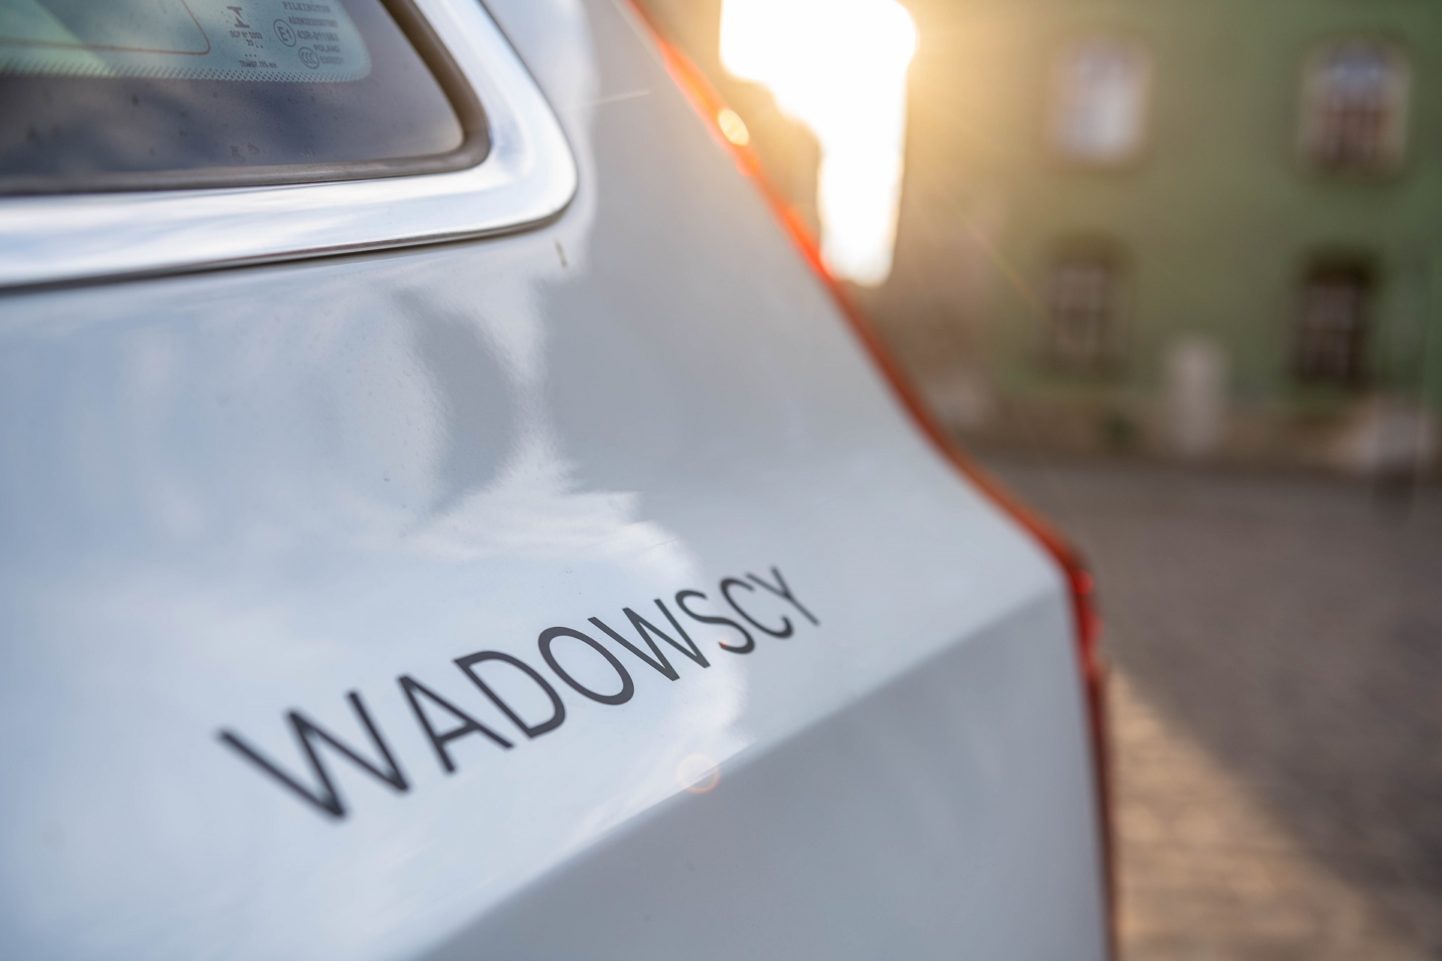 Wadowscy Autoryzowany Dealer Volvo Kraków Gaj